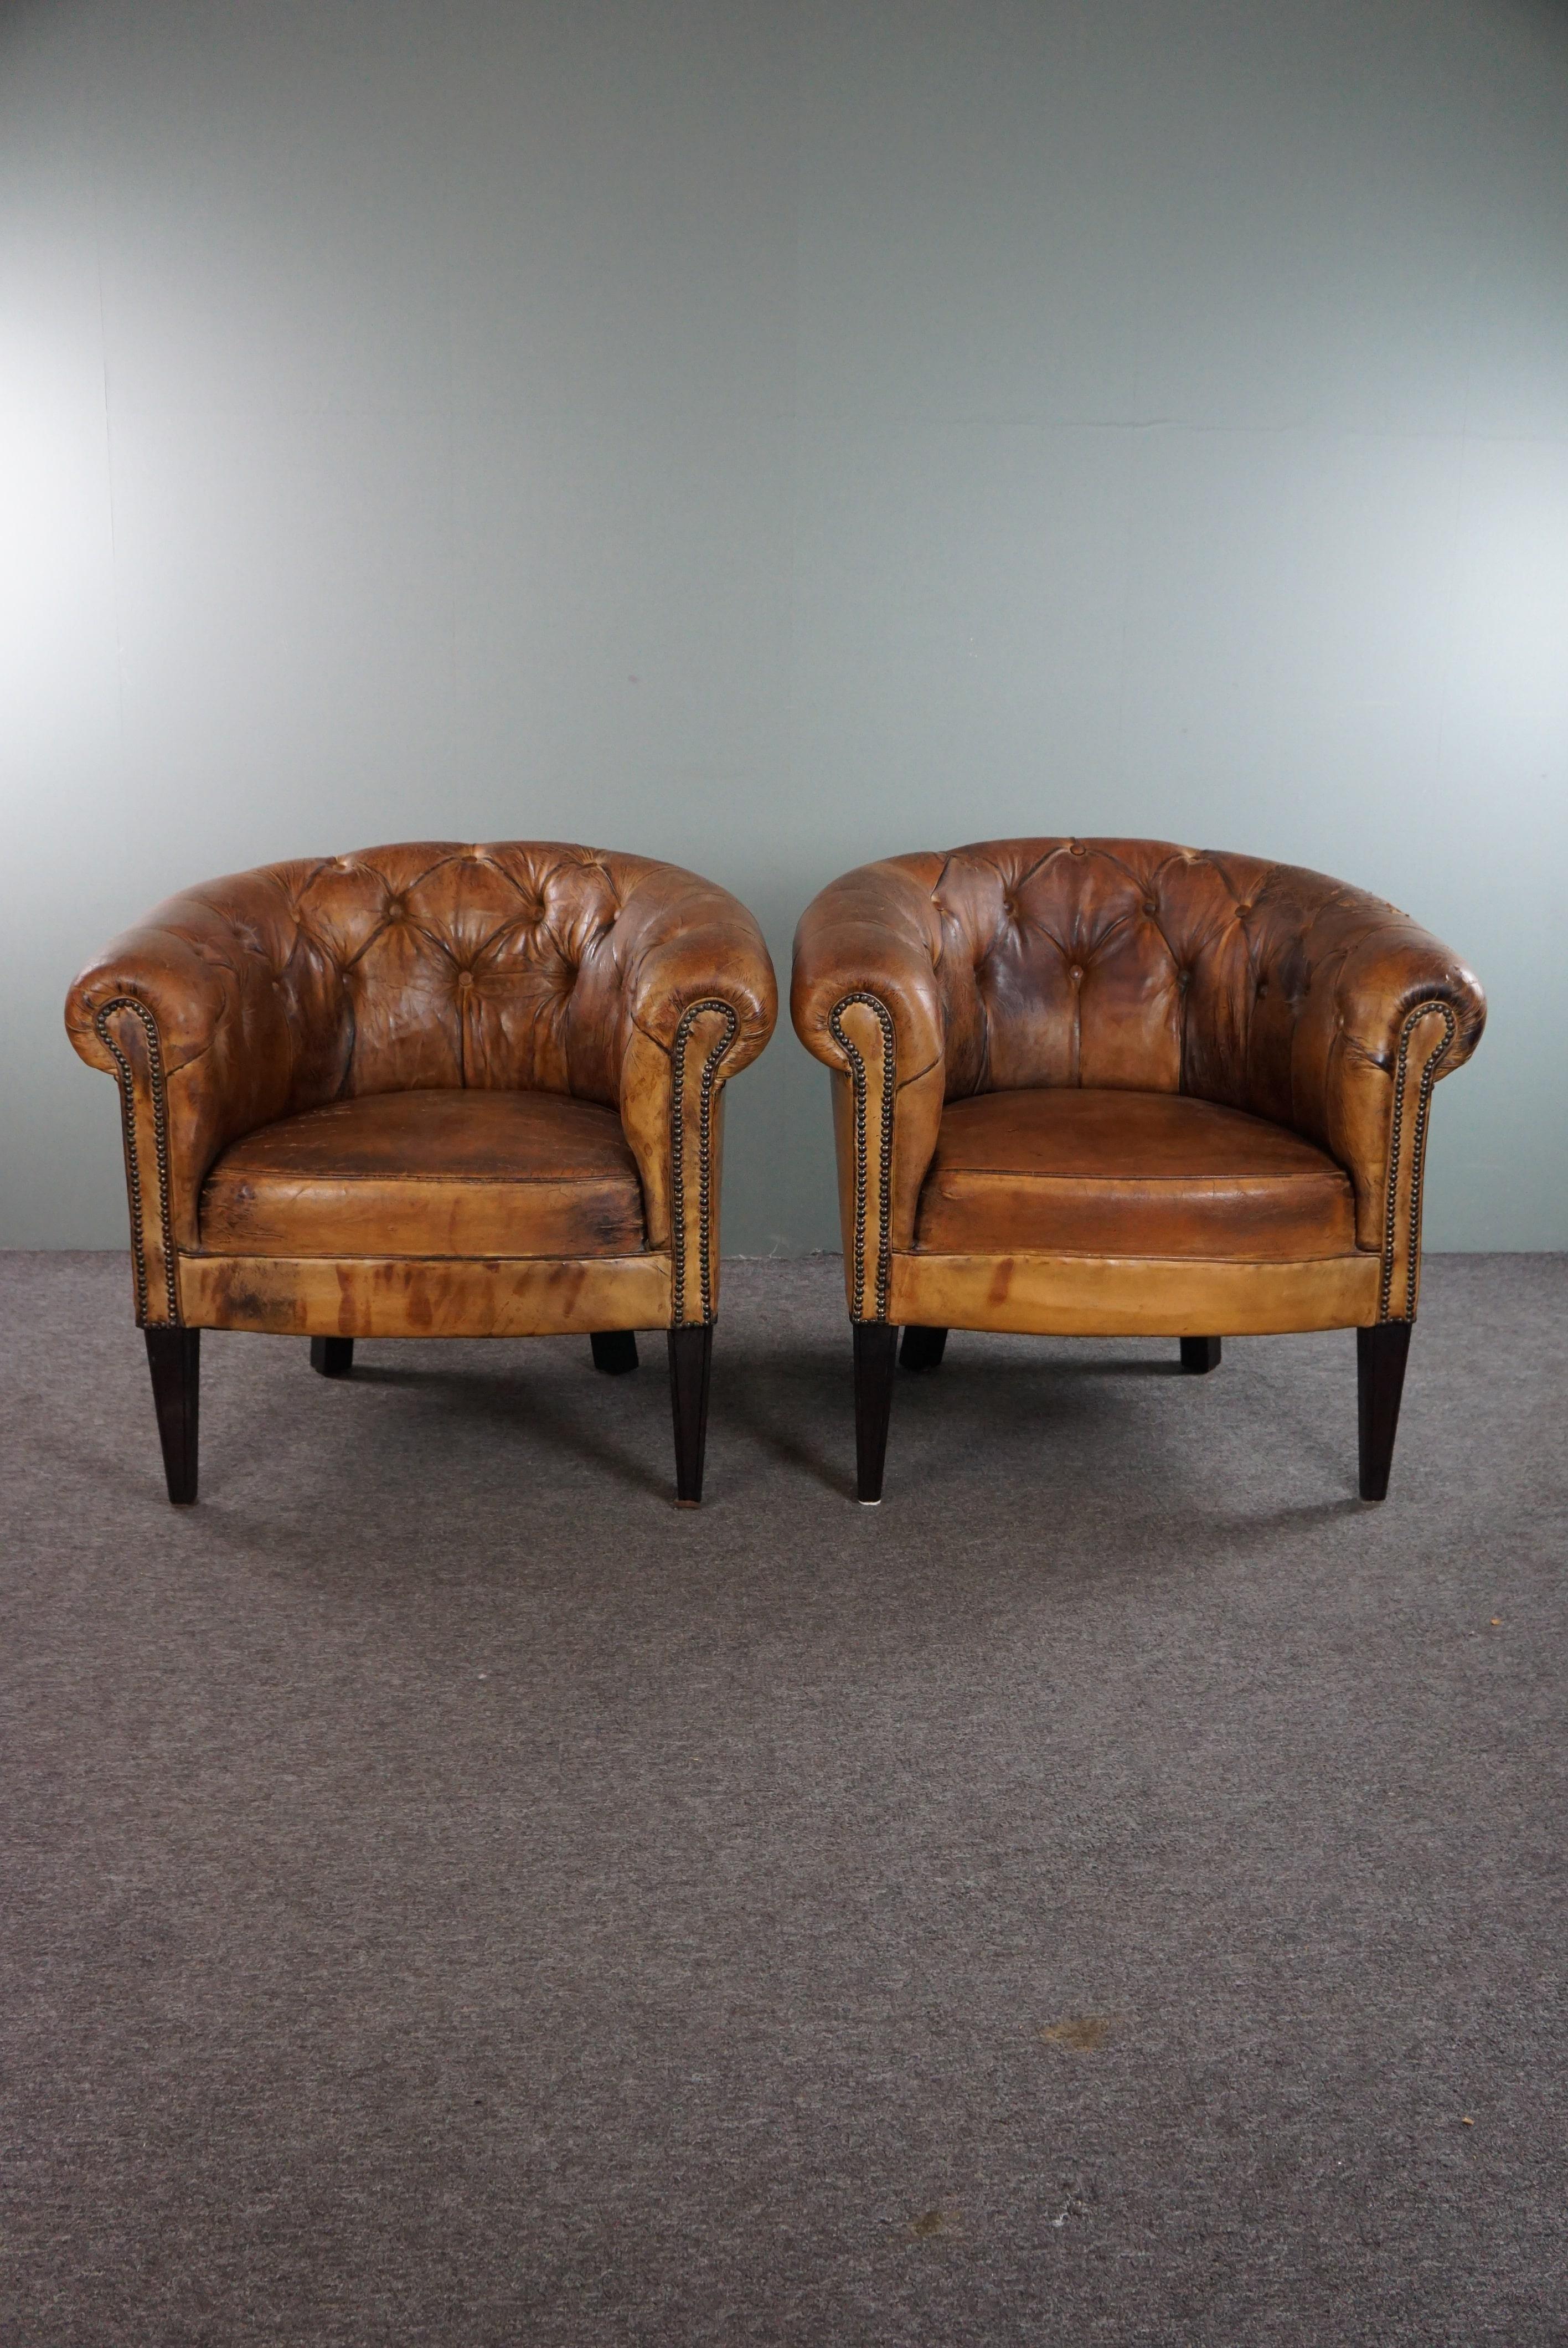 Offert : cet ensemble de deux fauteuils club Chesterfield en cuir de mouton ancien super cool avec un look incroyable.
Certains fauteuils possèdent tellement plus de charme et de caractère que les autres qu'on a envie de les placer chez soi, ils